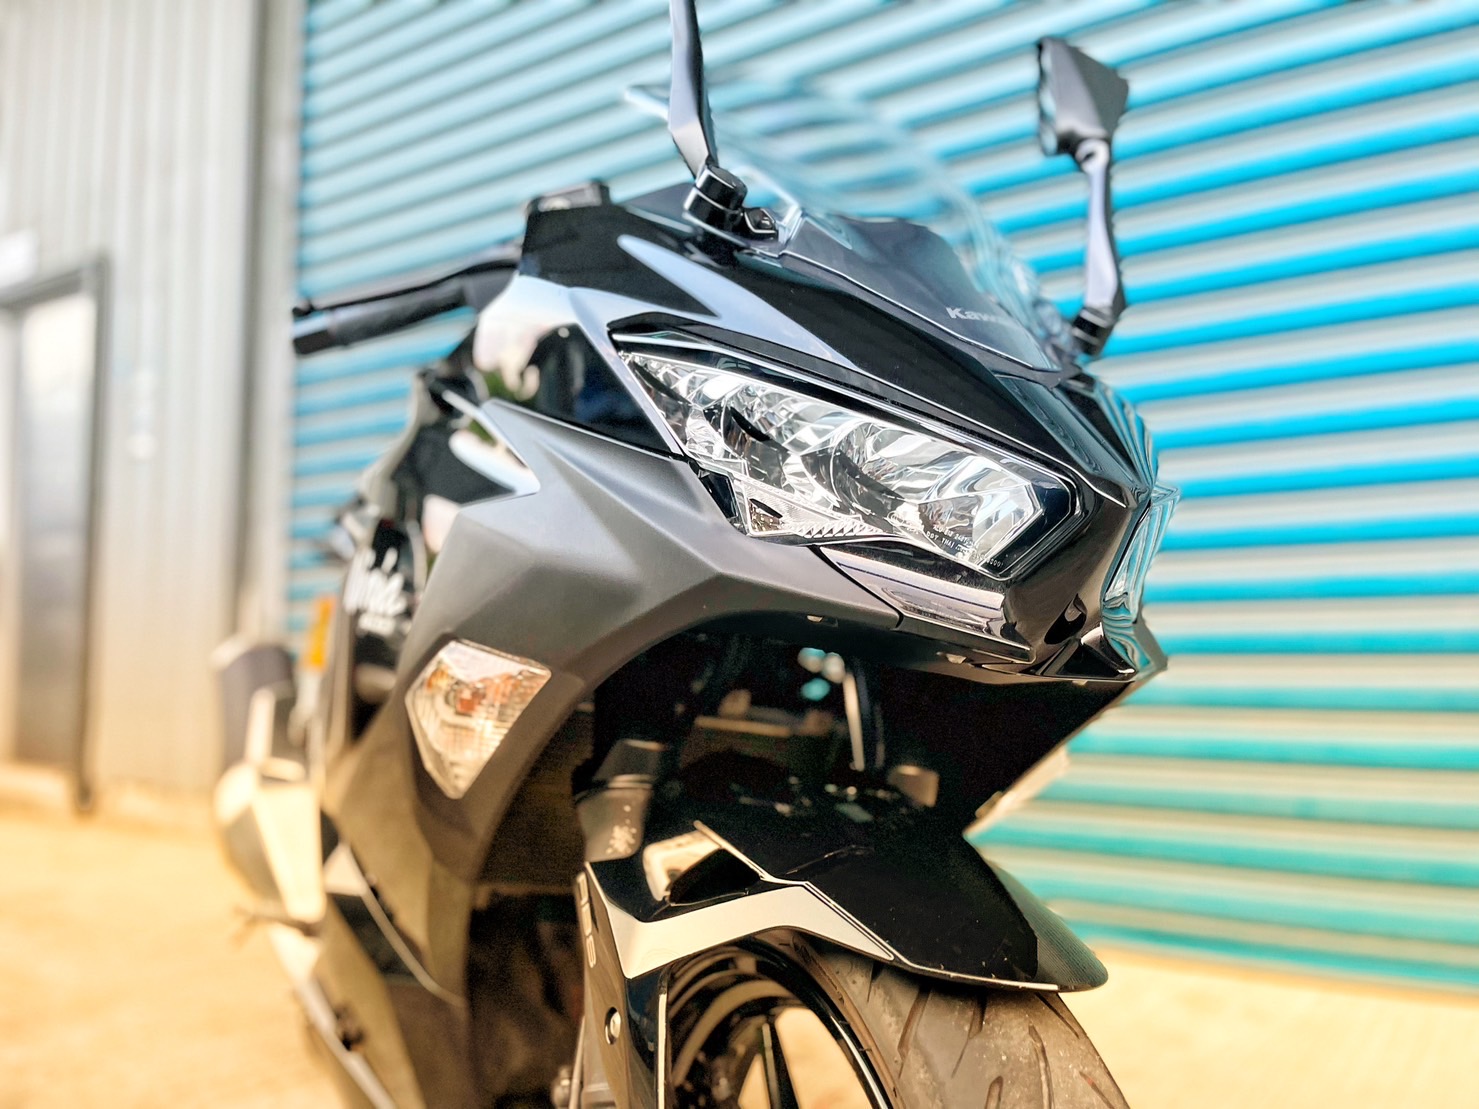 【小資族二手重機買賣】KAWASAKI NINJA400 - 「Webike-摩托車市」 系有黑色 原廠保固 里程保證 小資族二手重機買賣